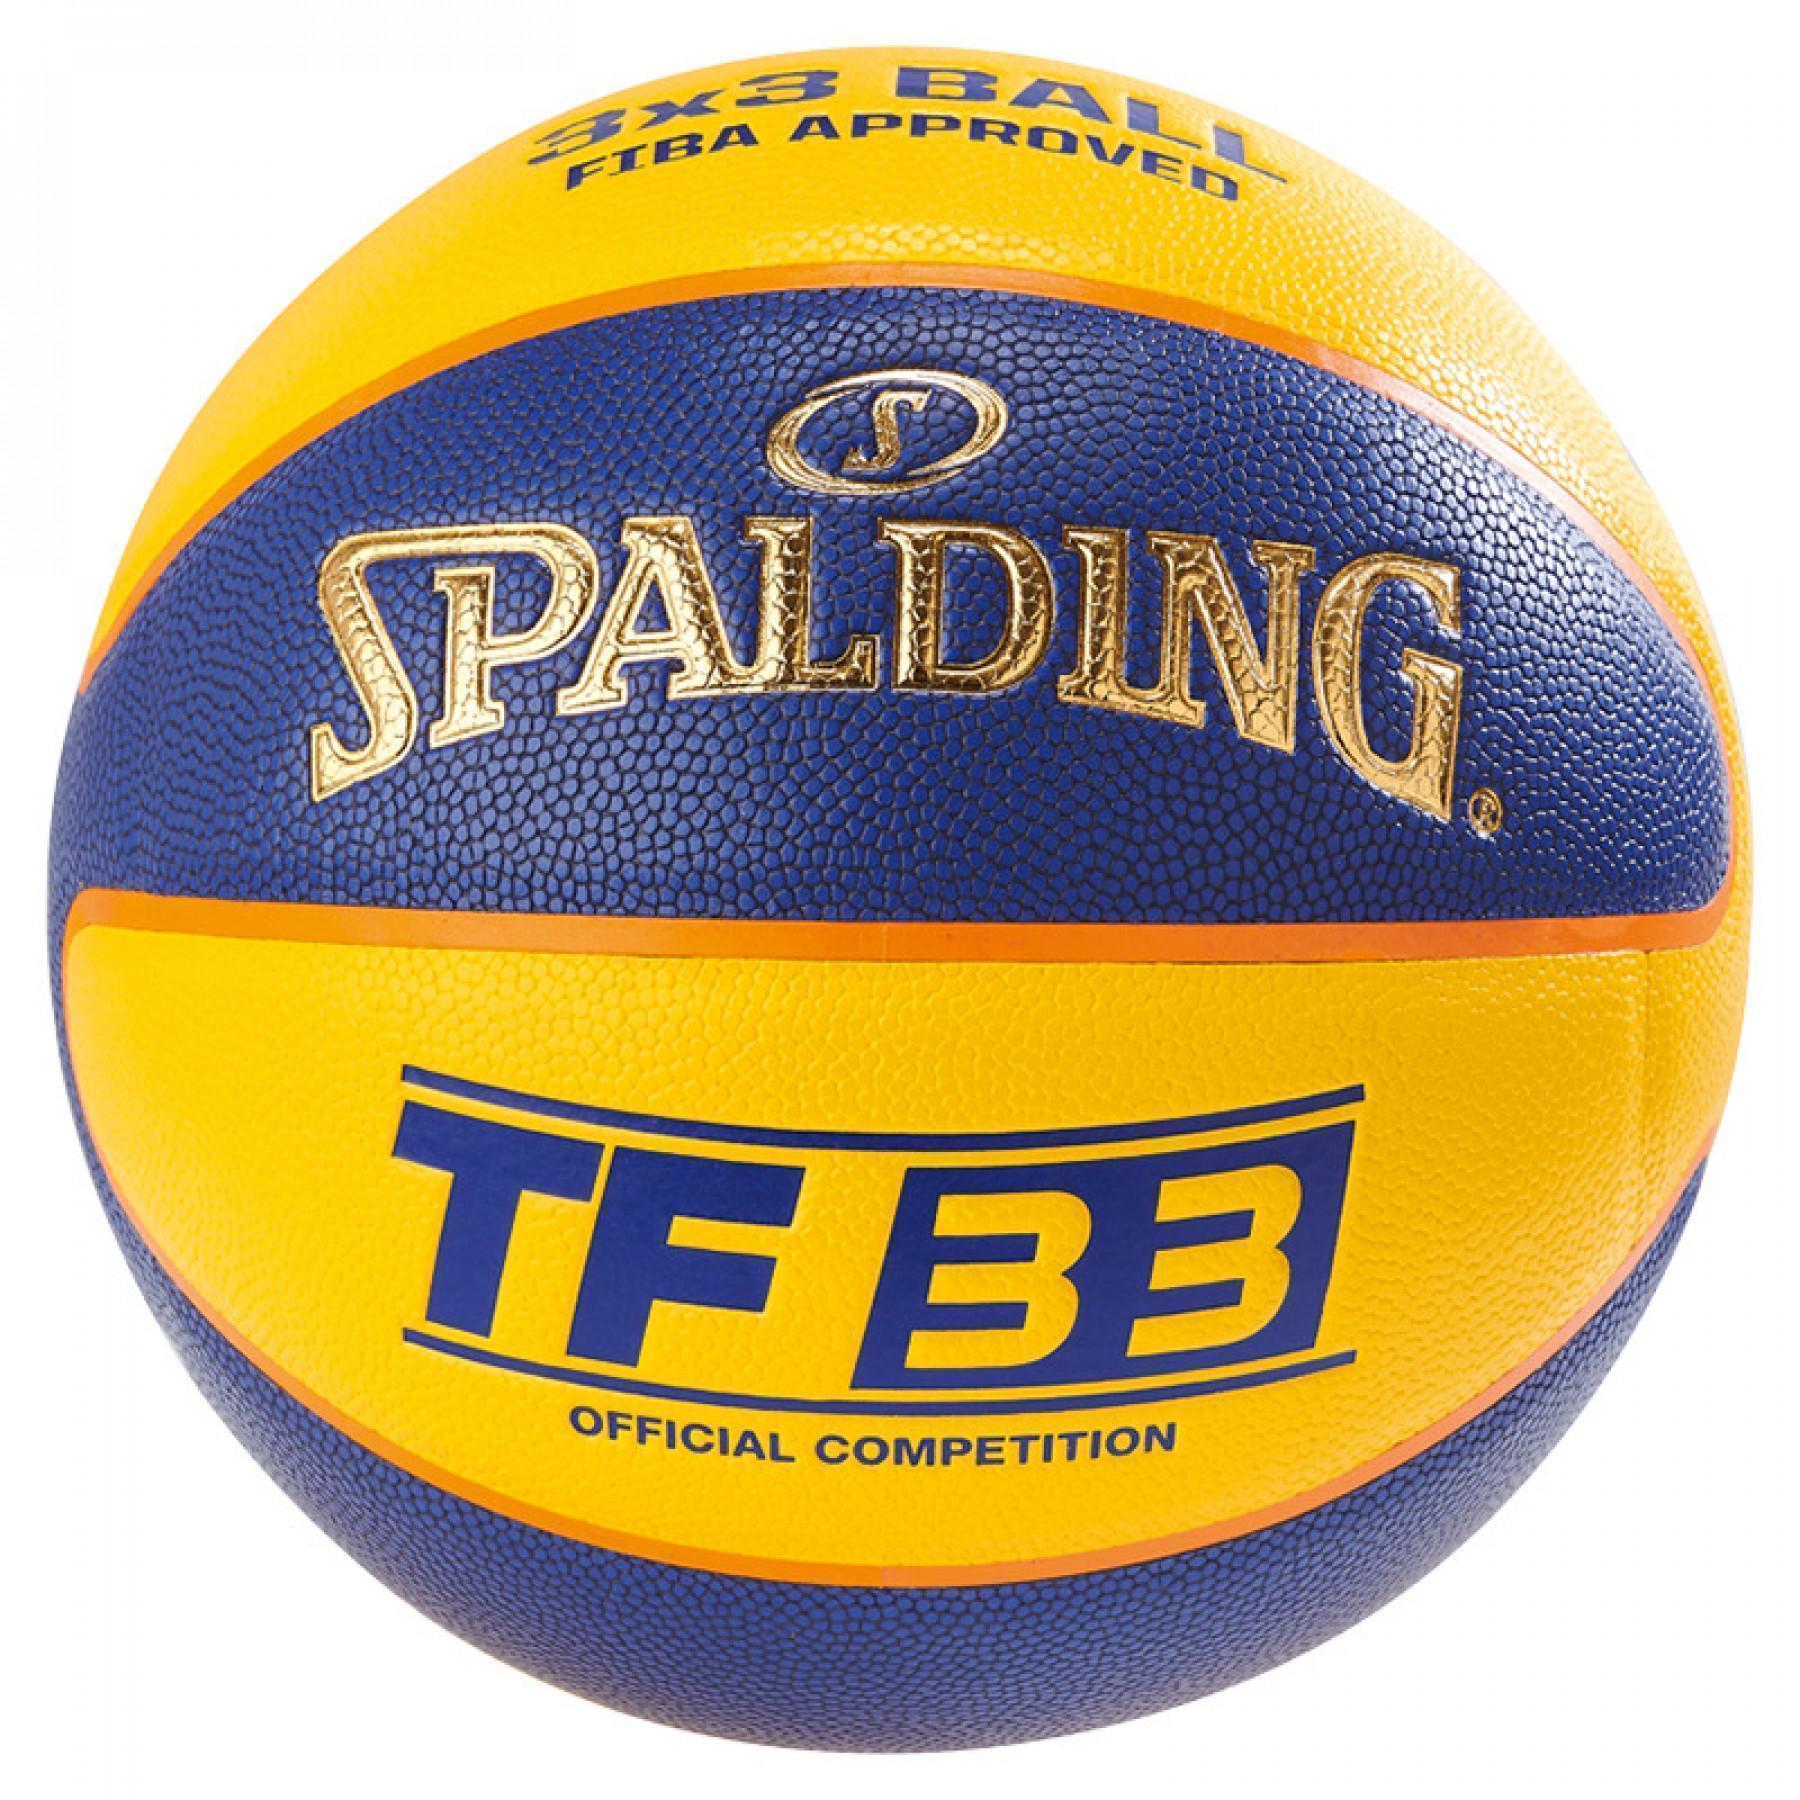 Ballong Spalding Tf33 Official Game (76-257z)